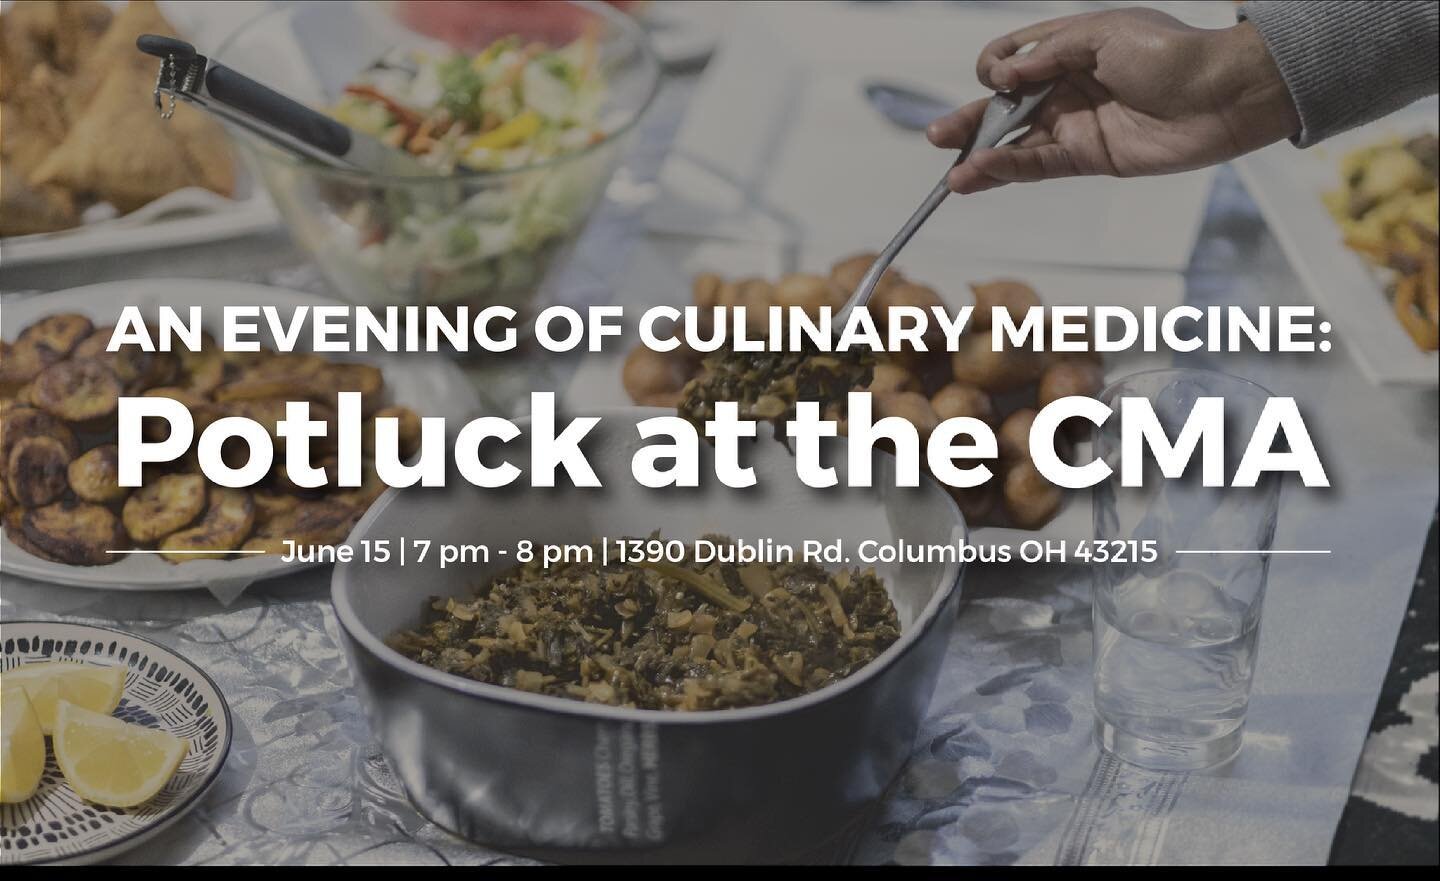 今天报名参加CMA的首次现场活动&lsquo;s烹饪医学社区! 

#聚餐#俄亥俄#烹饪医学